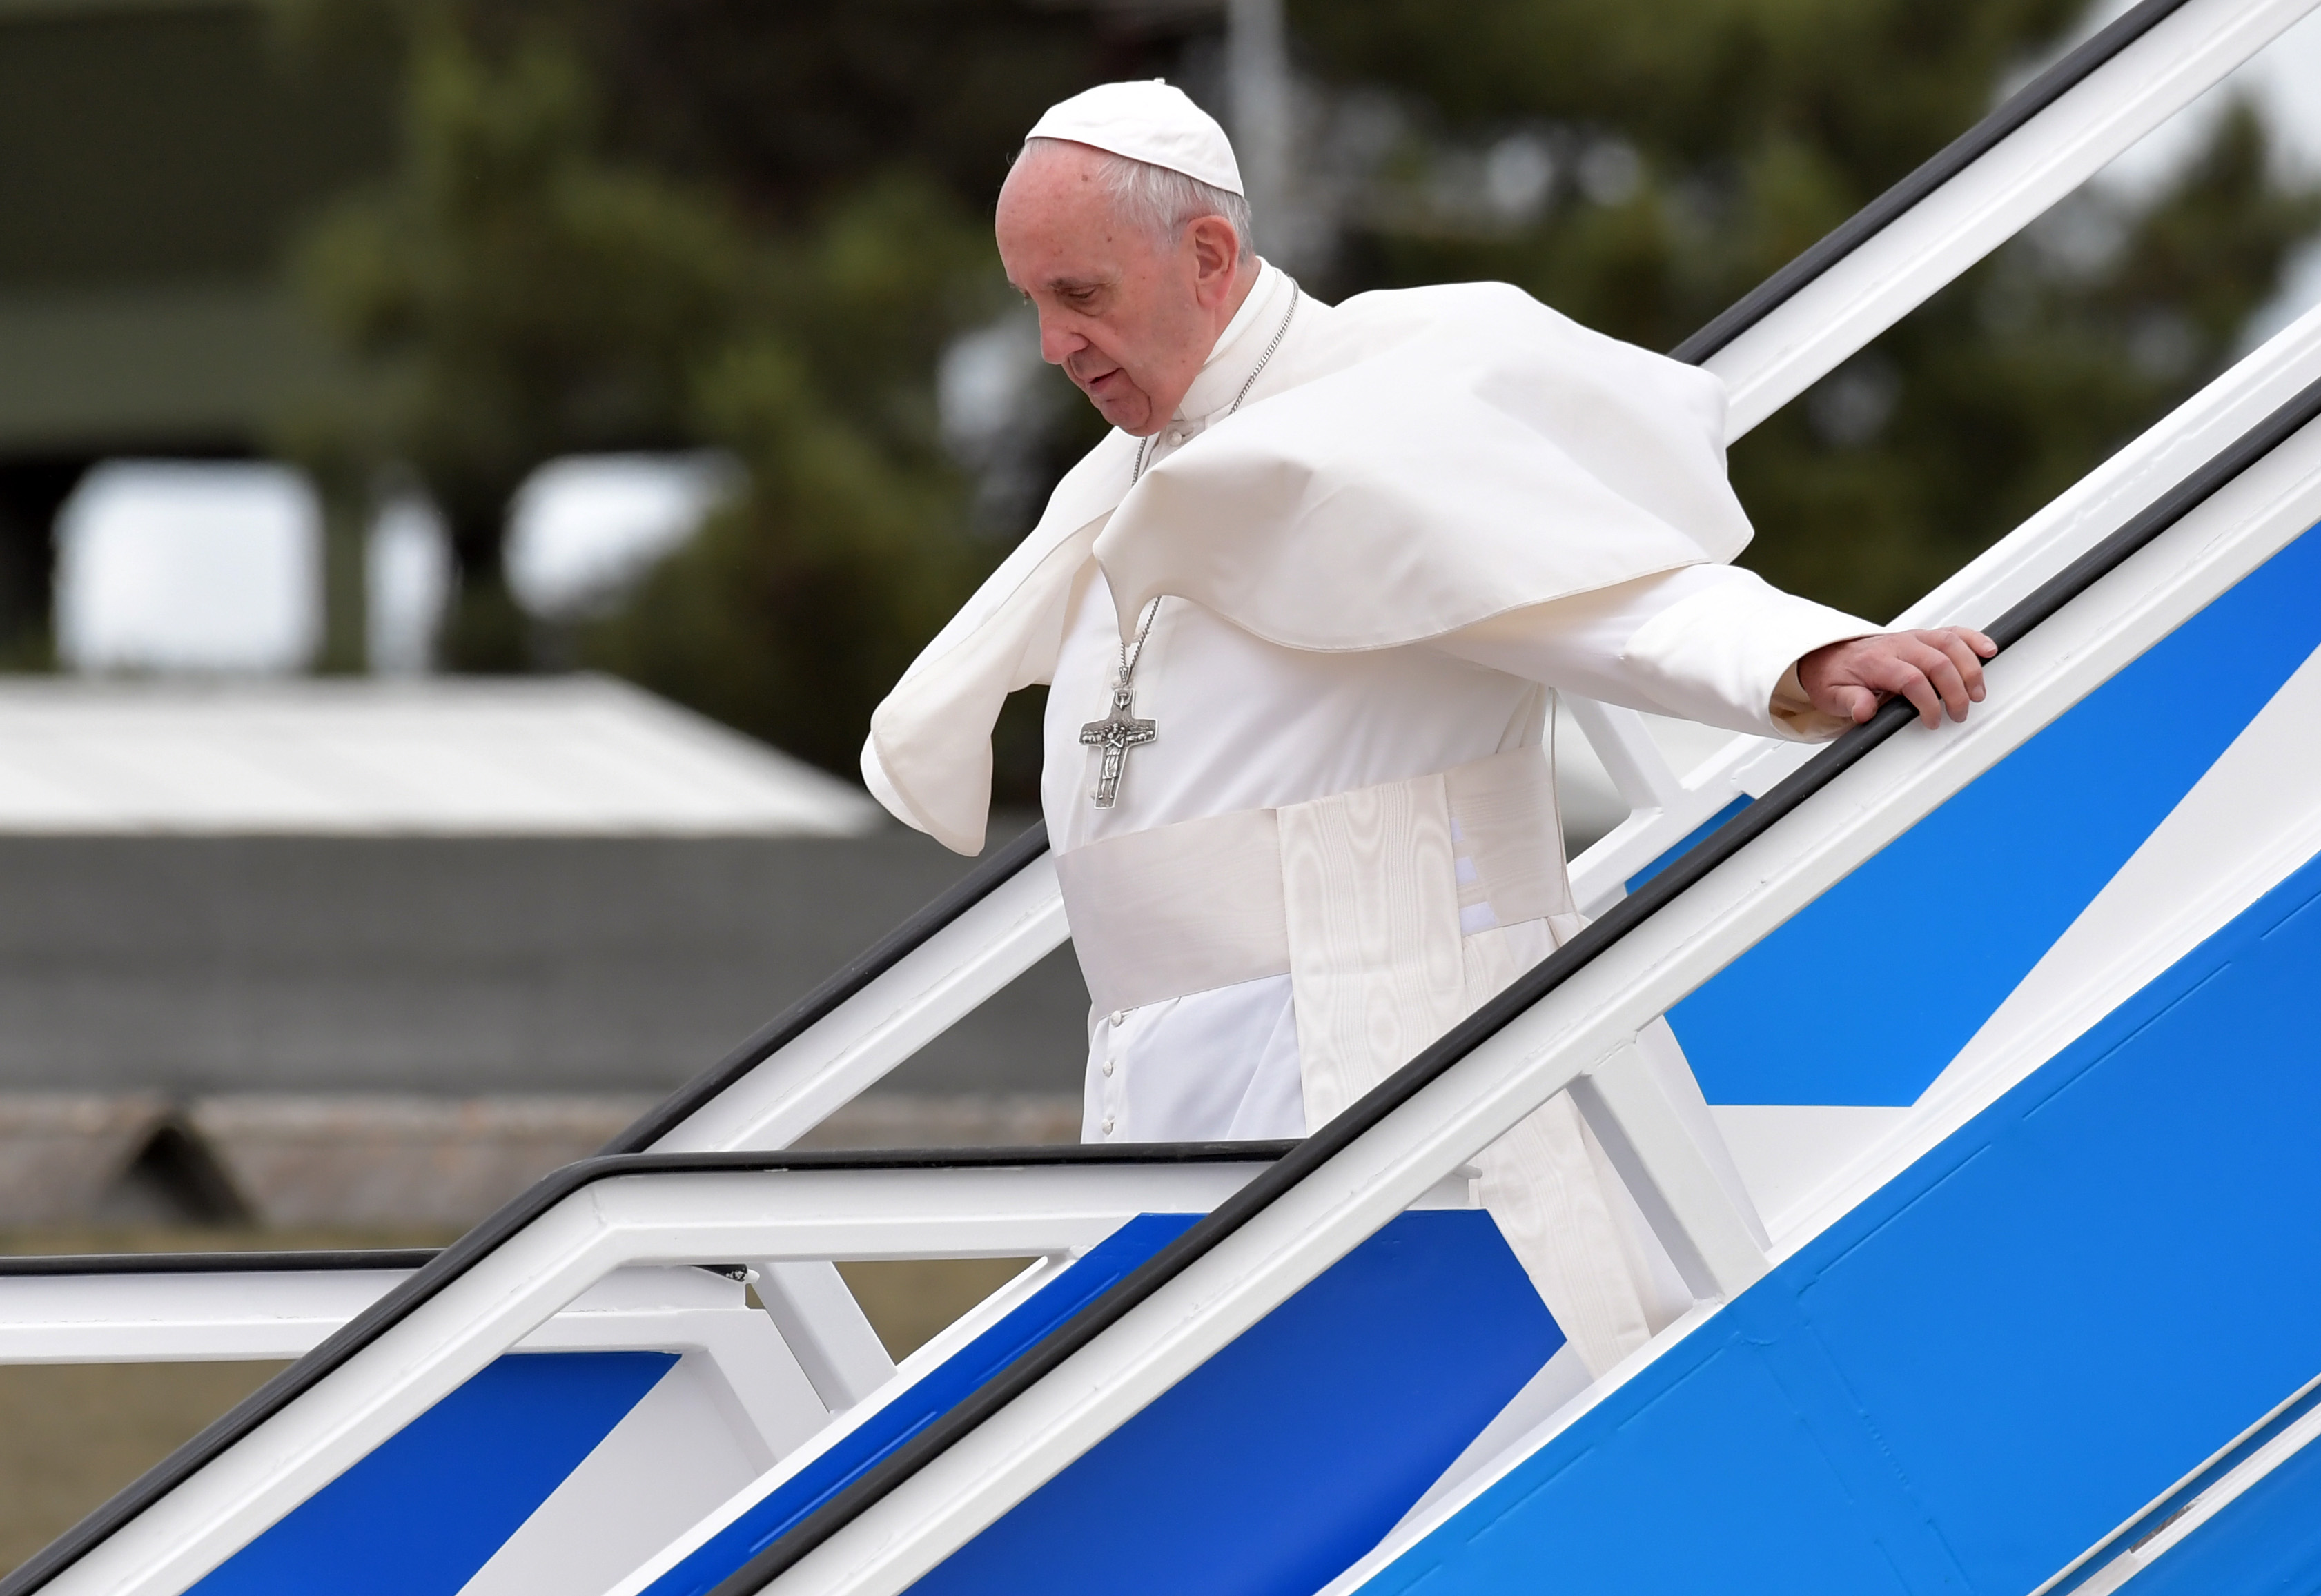 El papa Francisco sale de, avión que lo llevó a Fátima (Portugal) en el marco de la celebración del centenario de las apariciones de la Virgen María. (Crédito: TIZIANA FABI/AFP/Getty Images)